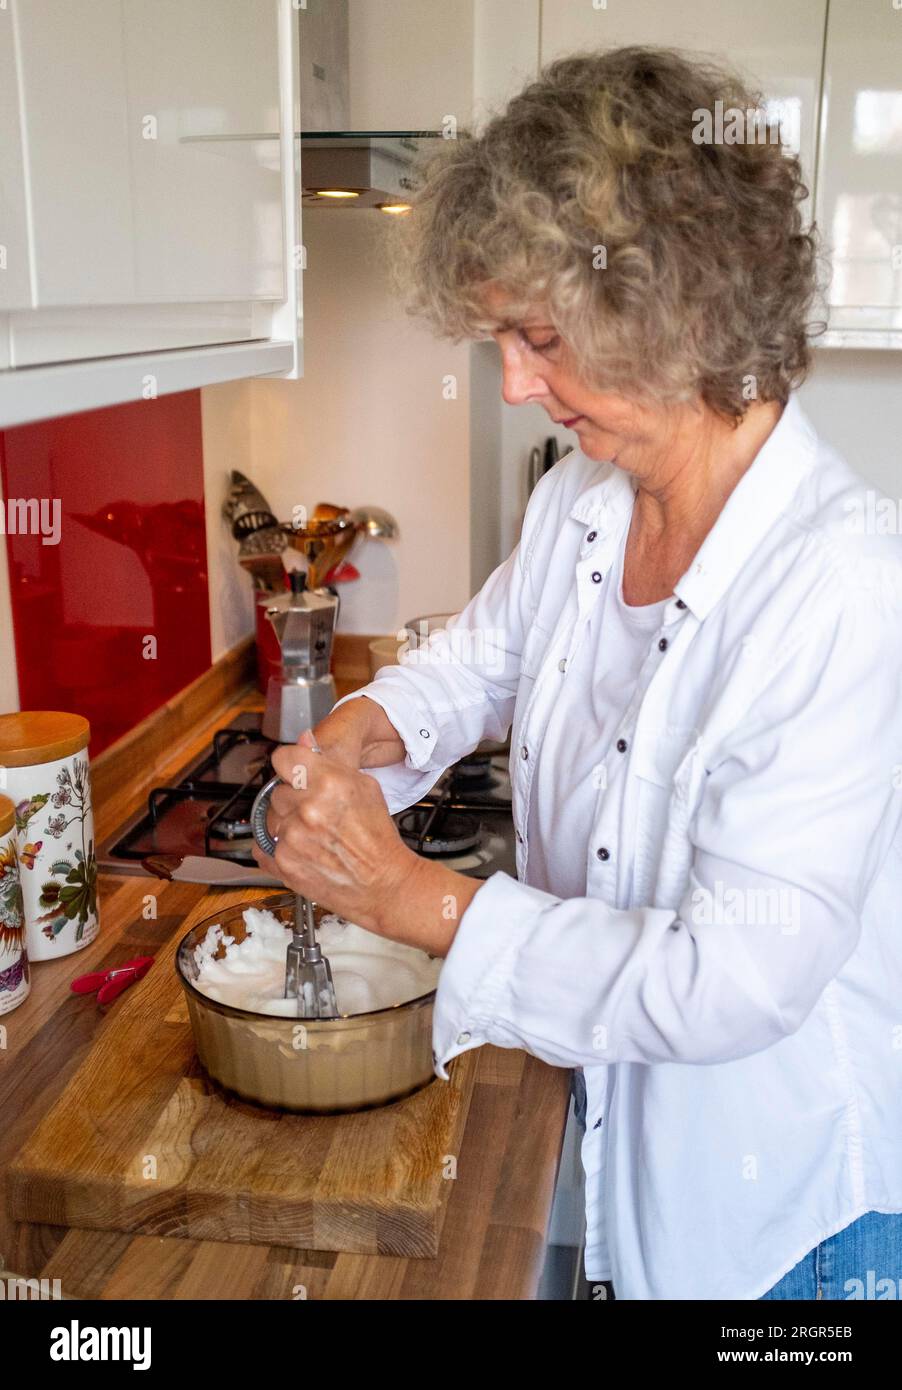 Cuoca casalinga sbattendo a mano gli albumi a punte rigide per preparare una mousse al cioccolato o una meringa Foto Stock